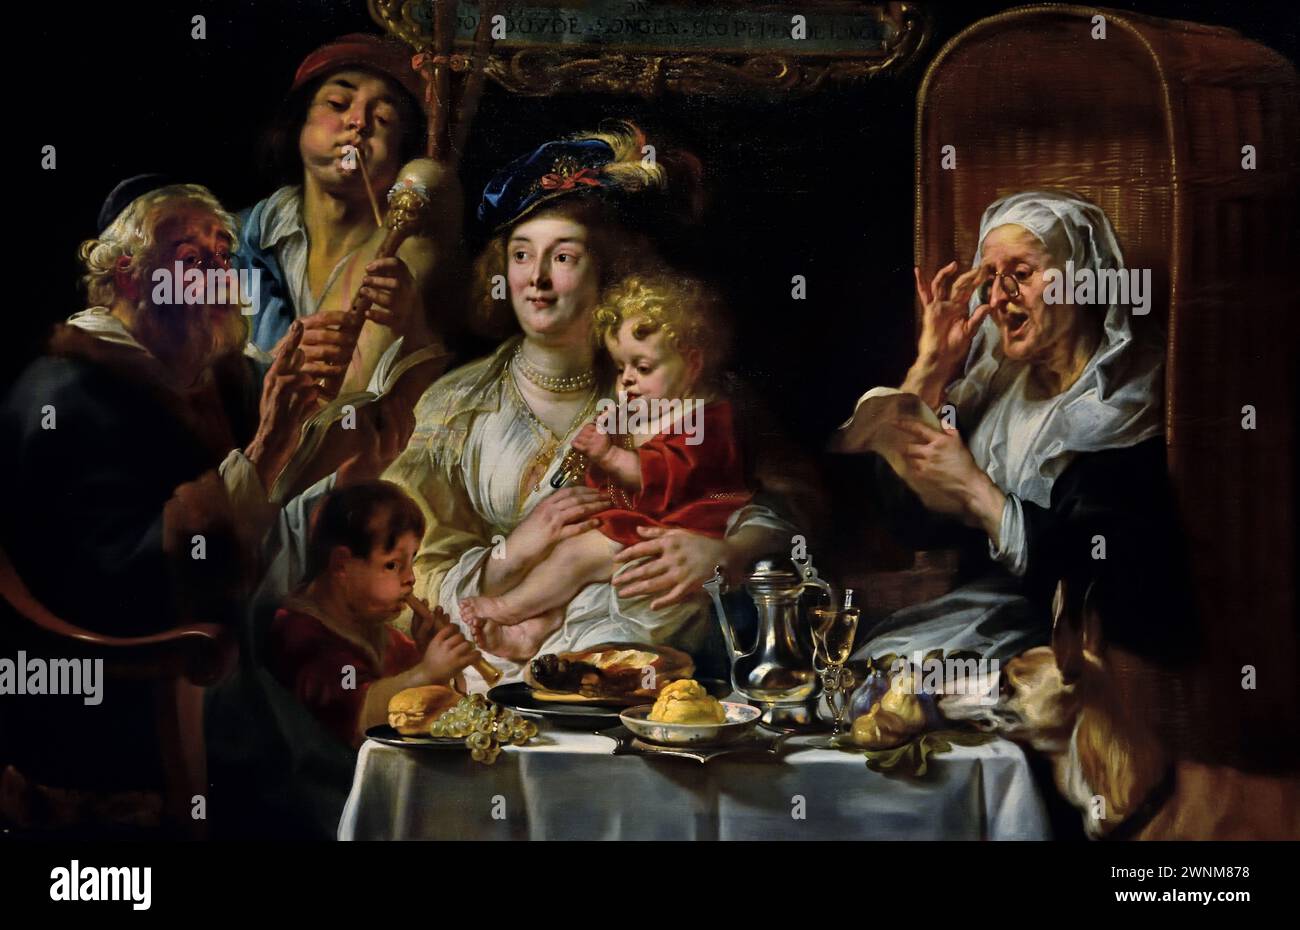 Come il Vecchio Sang, so Pipe the Young, Jacob Jordaens, (1593-1678) pittore barocco fiammingo del XVII secolo belga, Museo reale di Belle Arti, Anversa, Belgio, Belgio Foto Stock